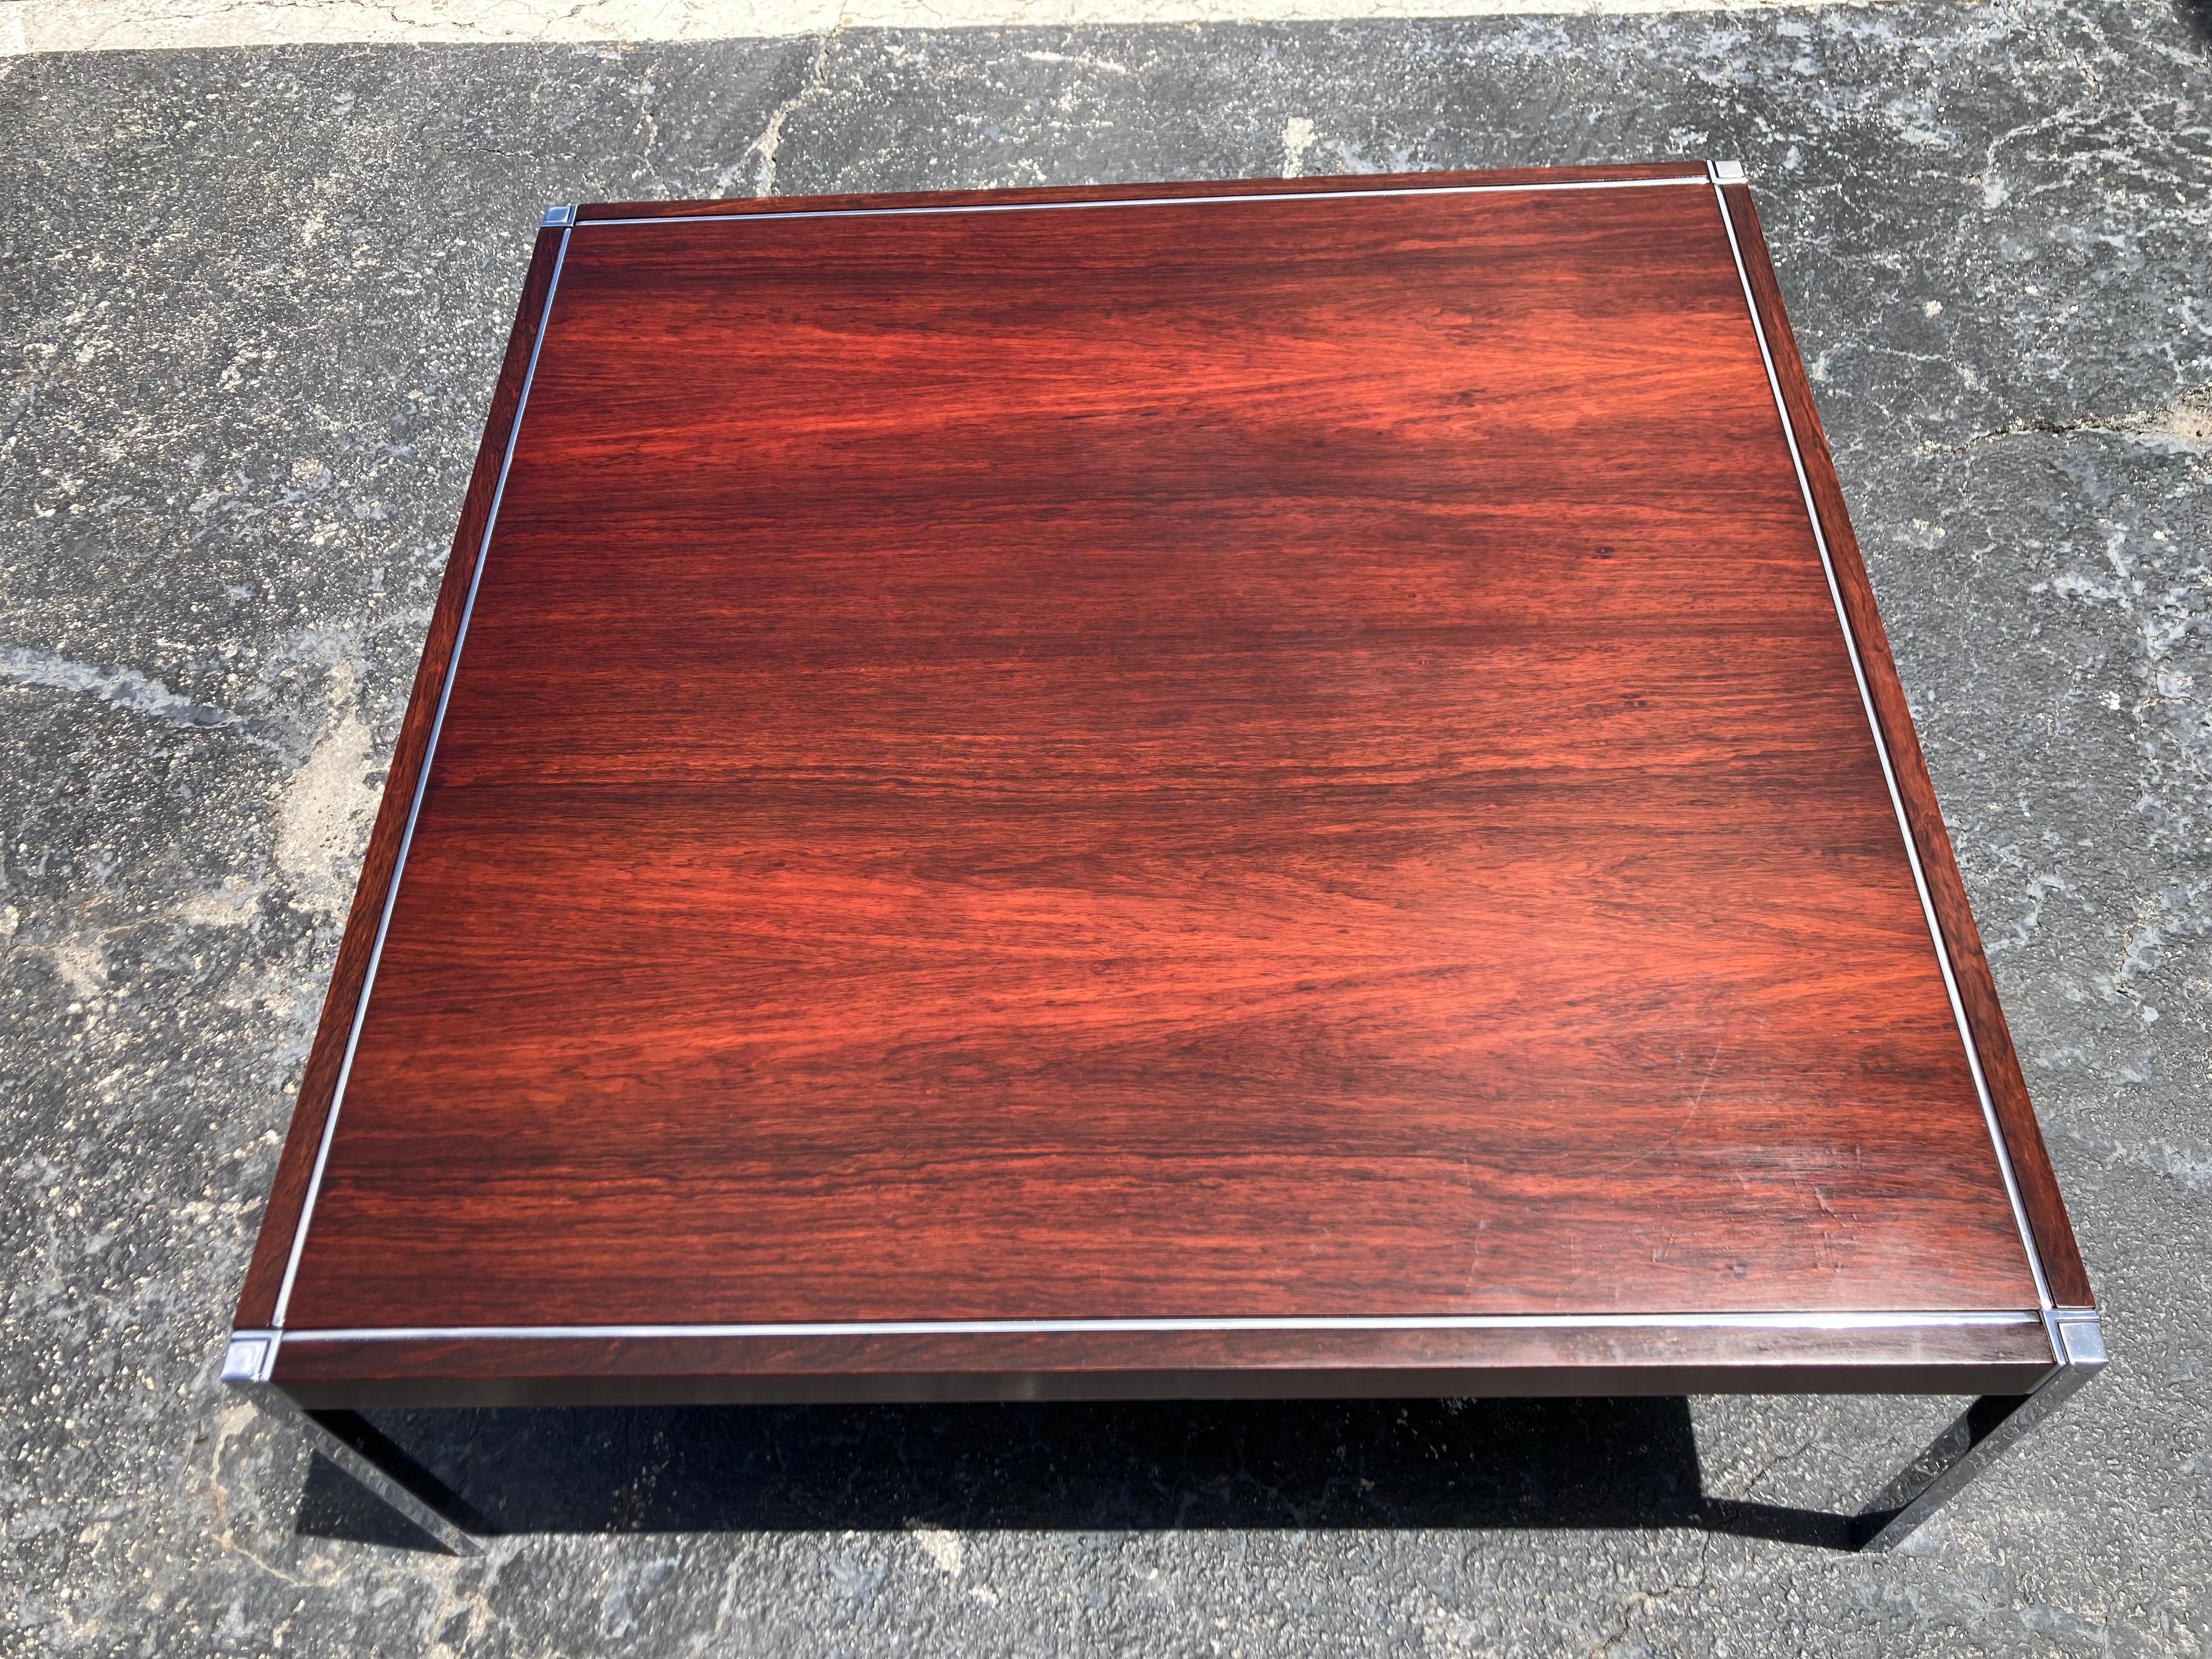 Table basse originale en bois de rose de Richard Schultz pour Steele, années 1970, bois plaqué de palissandre avec pieds en acier chromé. Bel état avec quelques rayures et entailles normales. Veuillez voir toutes les photos.